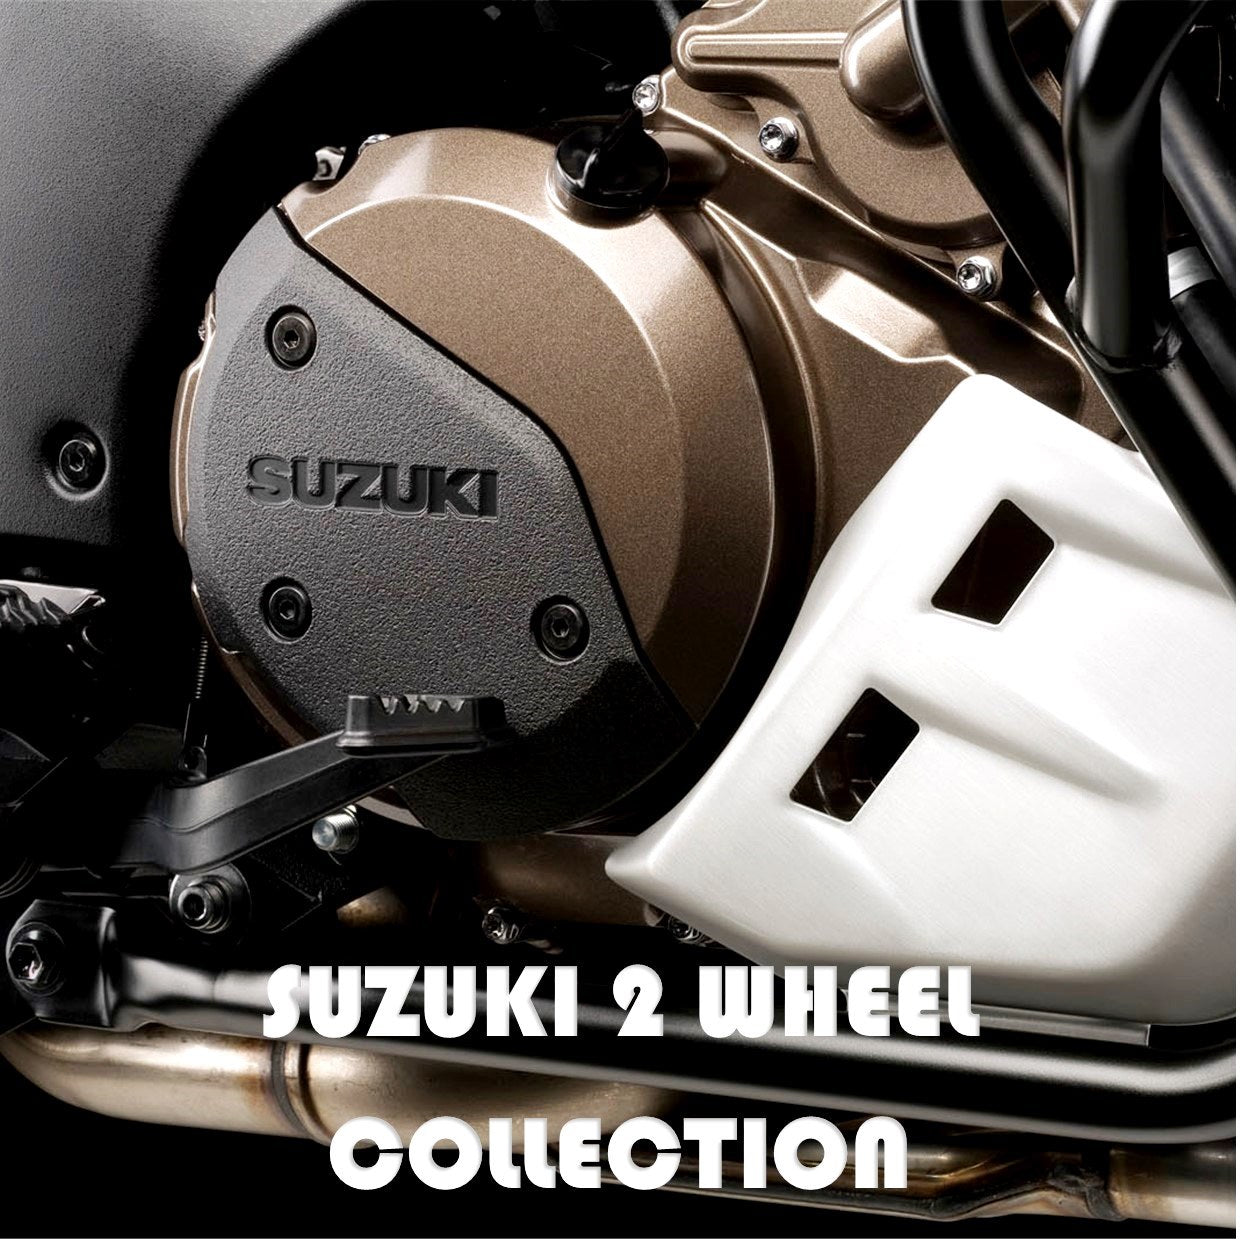 All Suzuki 2 Wheel